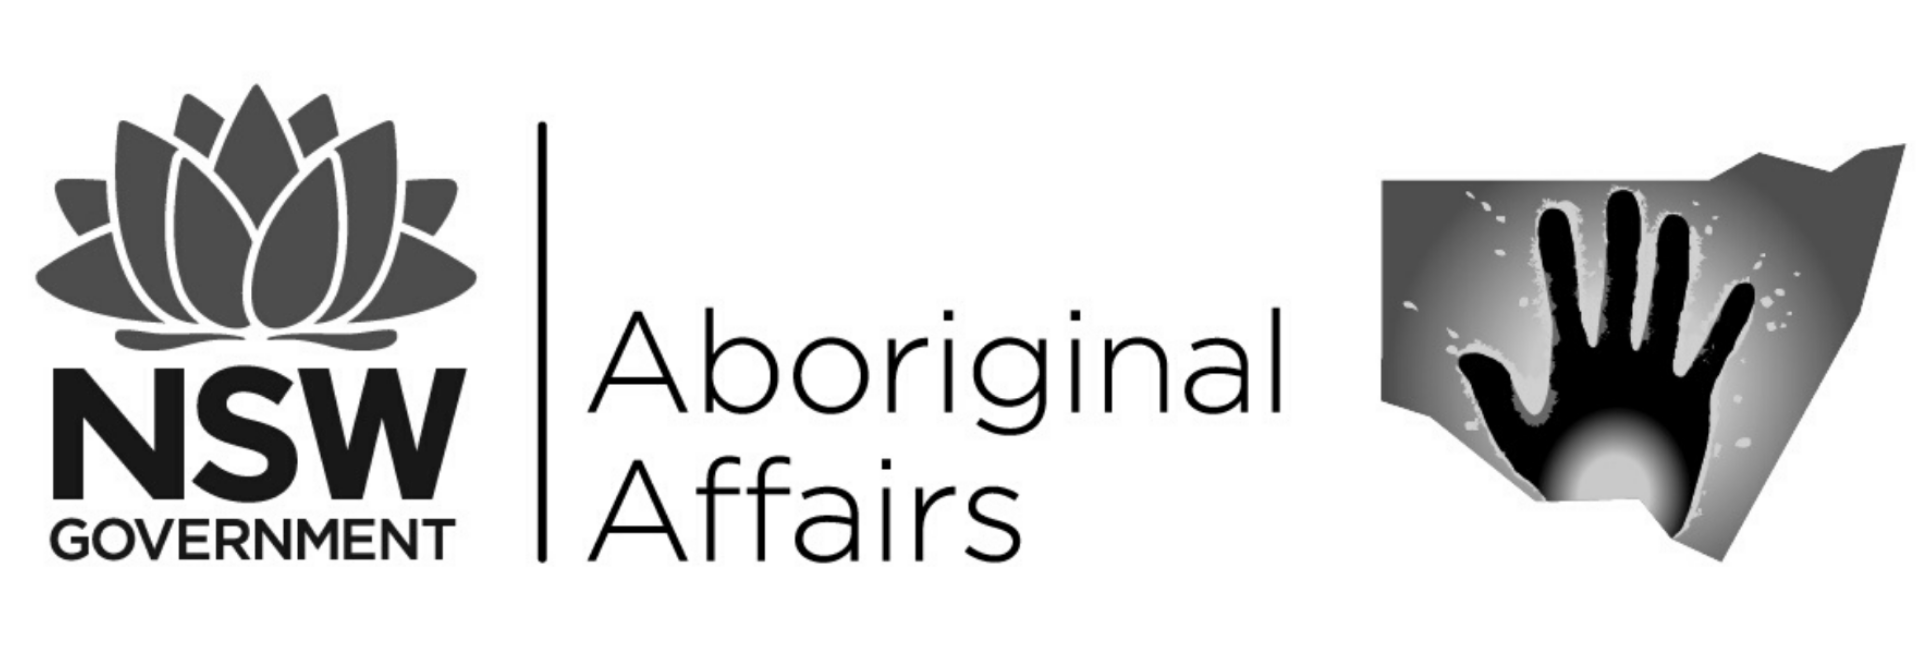 Aboriginal Affairs NSW